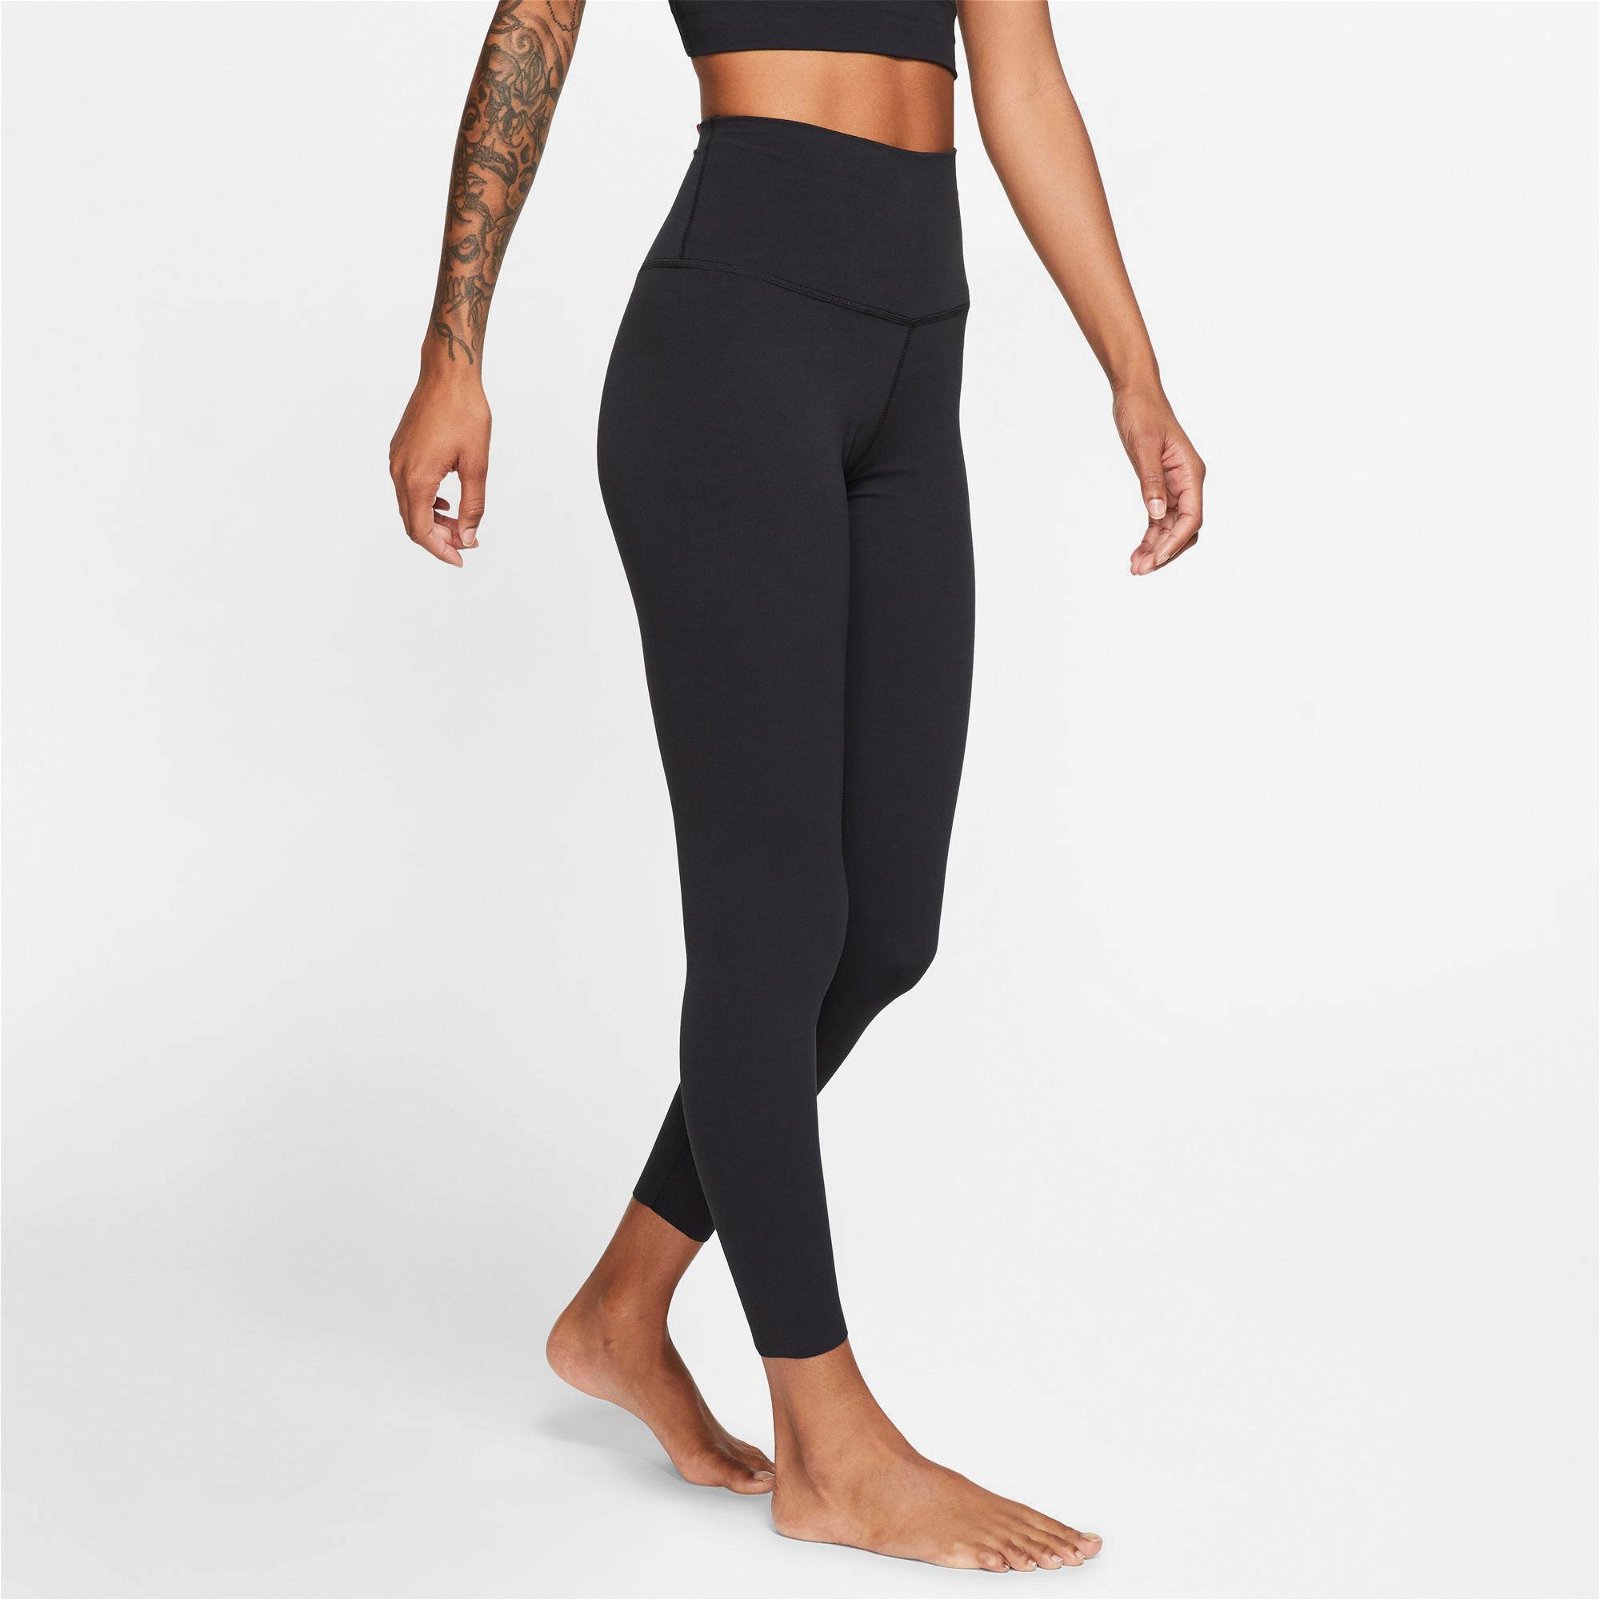 Nike The Nike Yoga Luxe 7/8 Kadın Siyah Tayt